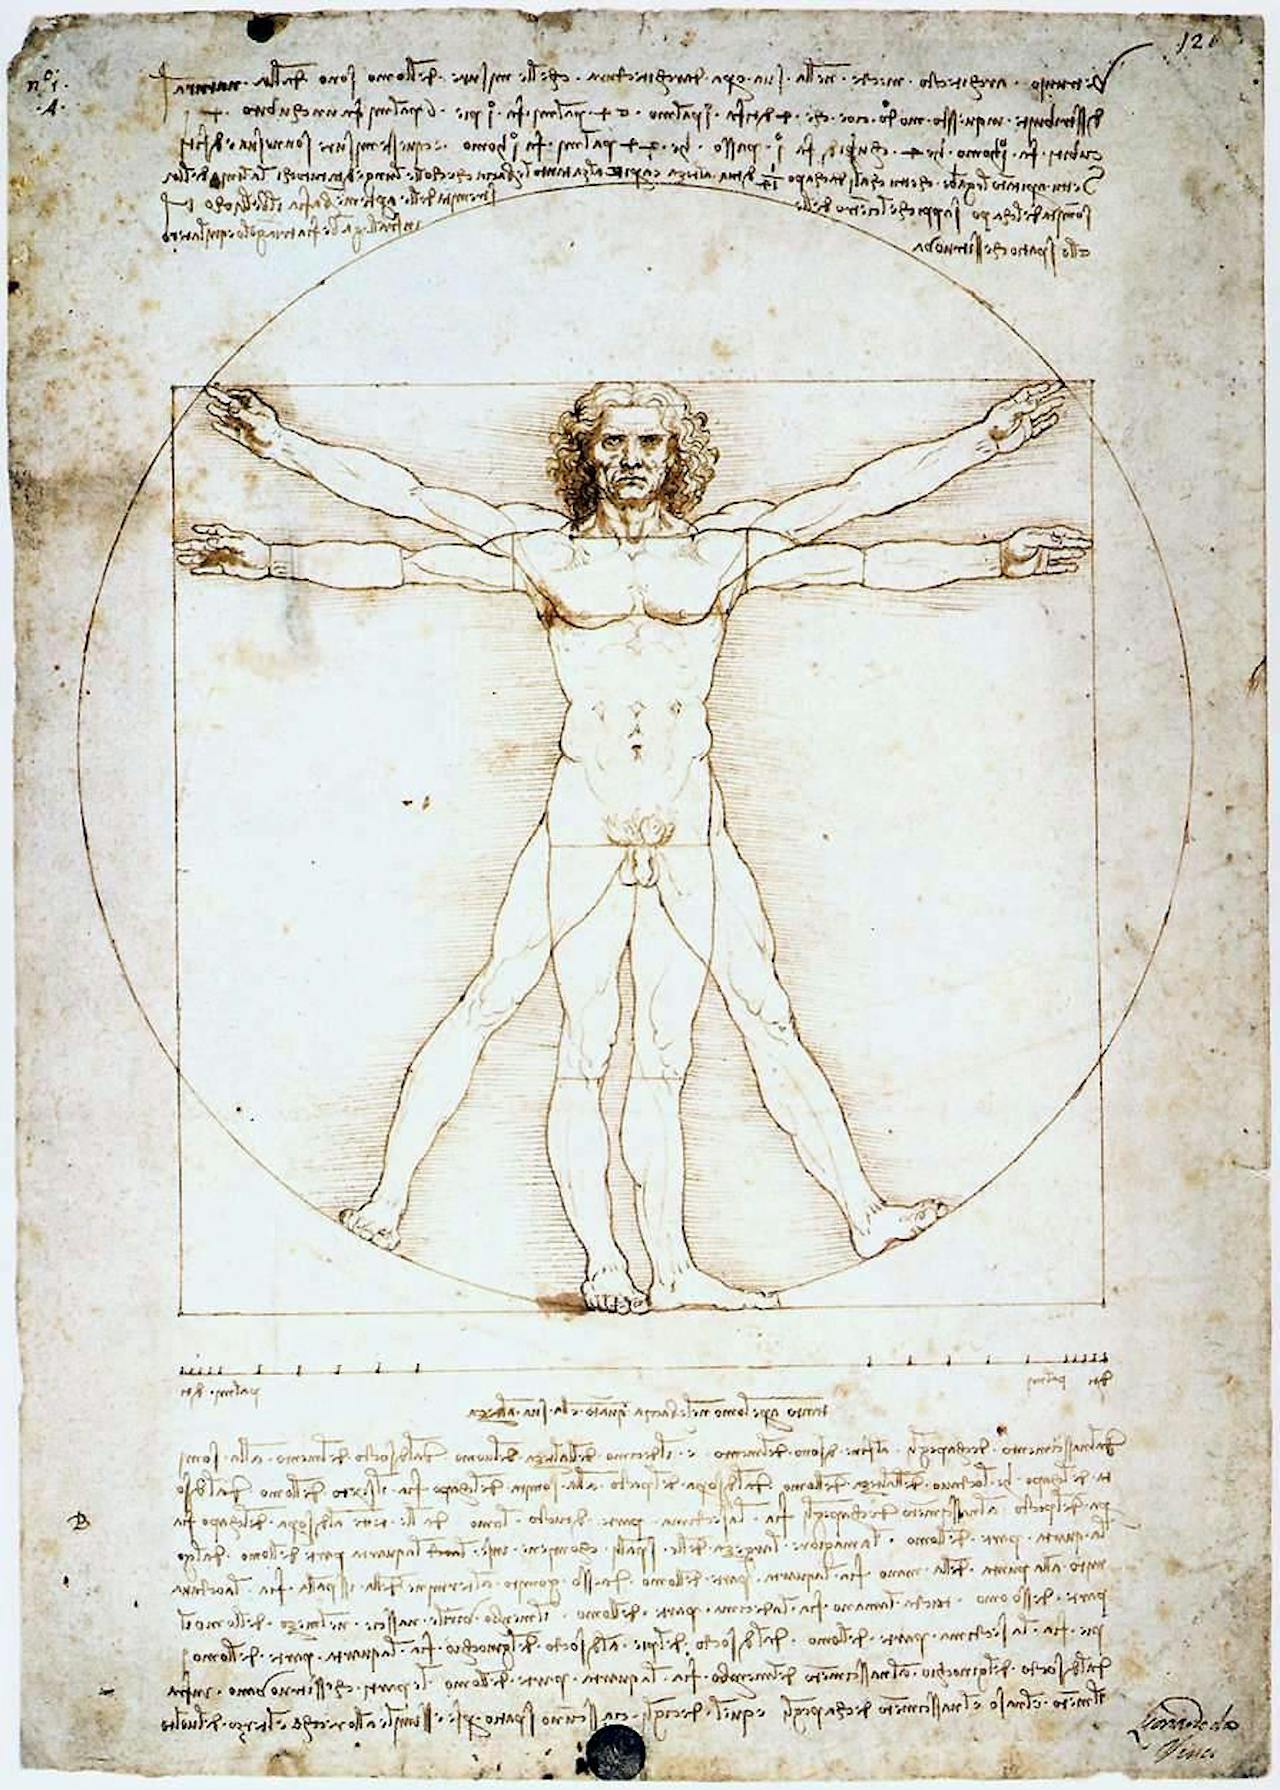 Tekening van Leonardo da Vinci van de Vitruviusman. In deze tekening beschijft da Vinci een aantal verhoudingen van het menselijk lichaam.